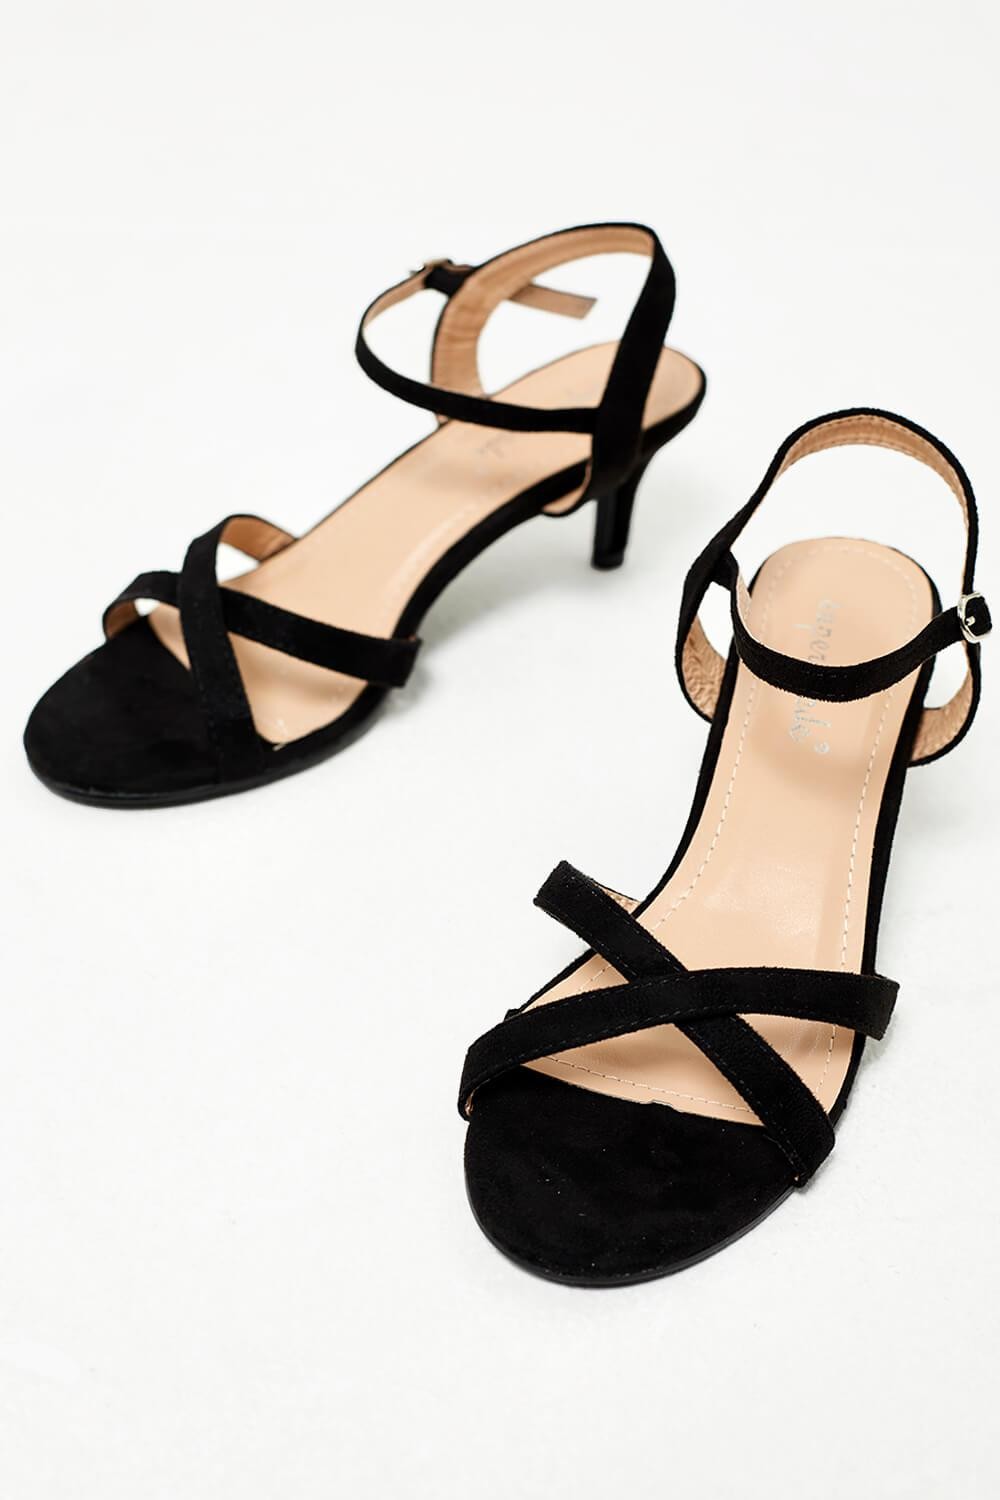 No Doubt Ami Kitten Heel Sandals in Black Suede | iCLOTHING